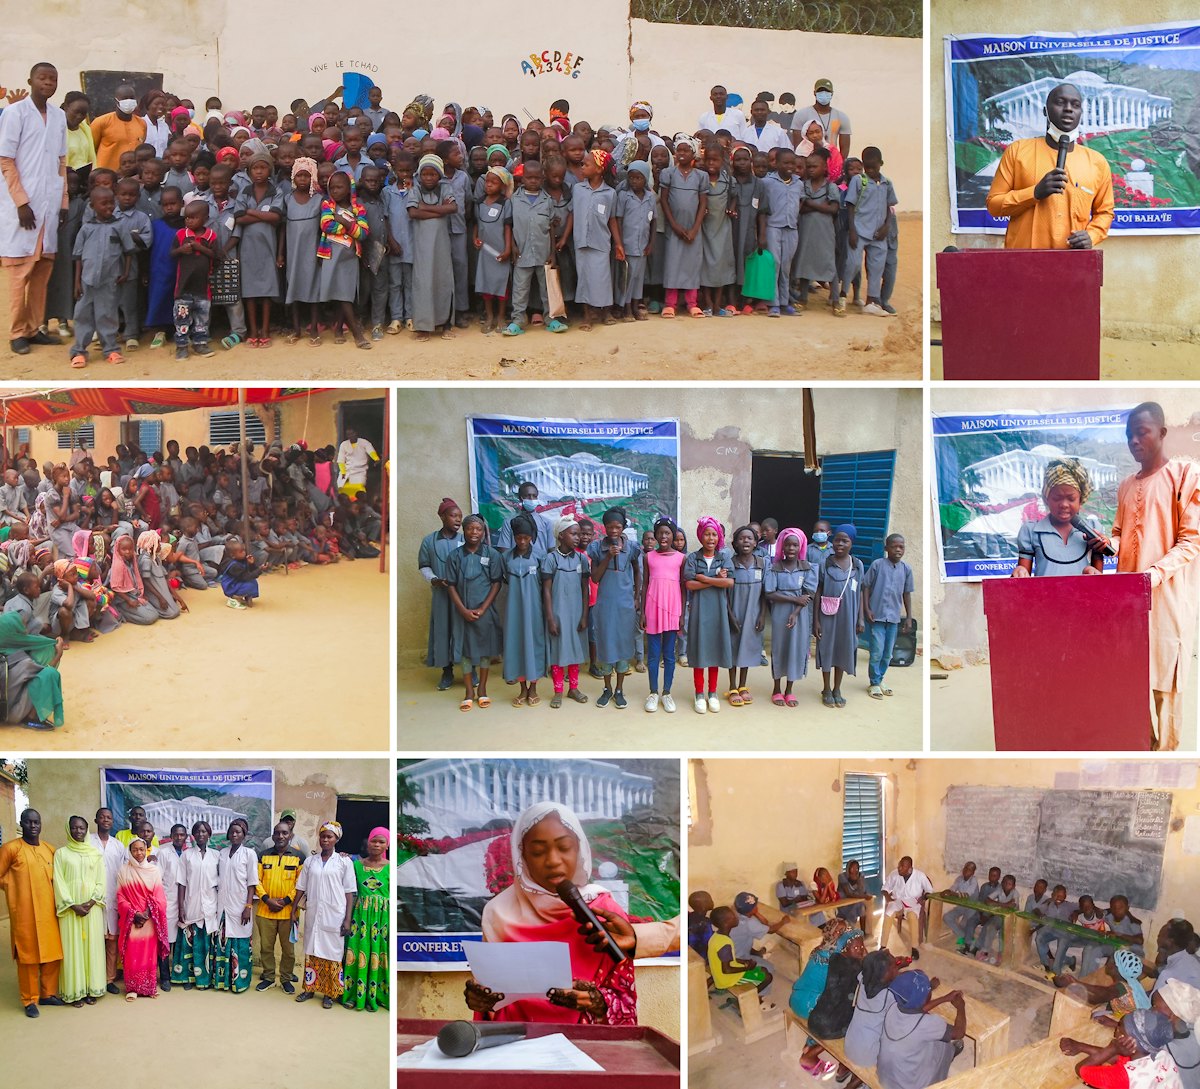 En la imagen, una conferencia en la escuela Mashiyyat en Chad, en la que los mismos principios que se vieron en las conferencias mundiales fueron analizados por parte de los estudiantes y del profesorado asistente.